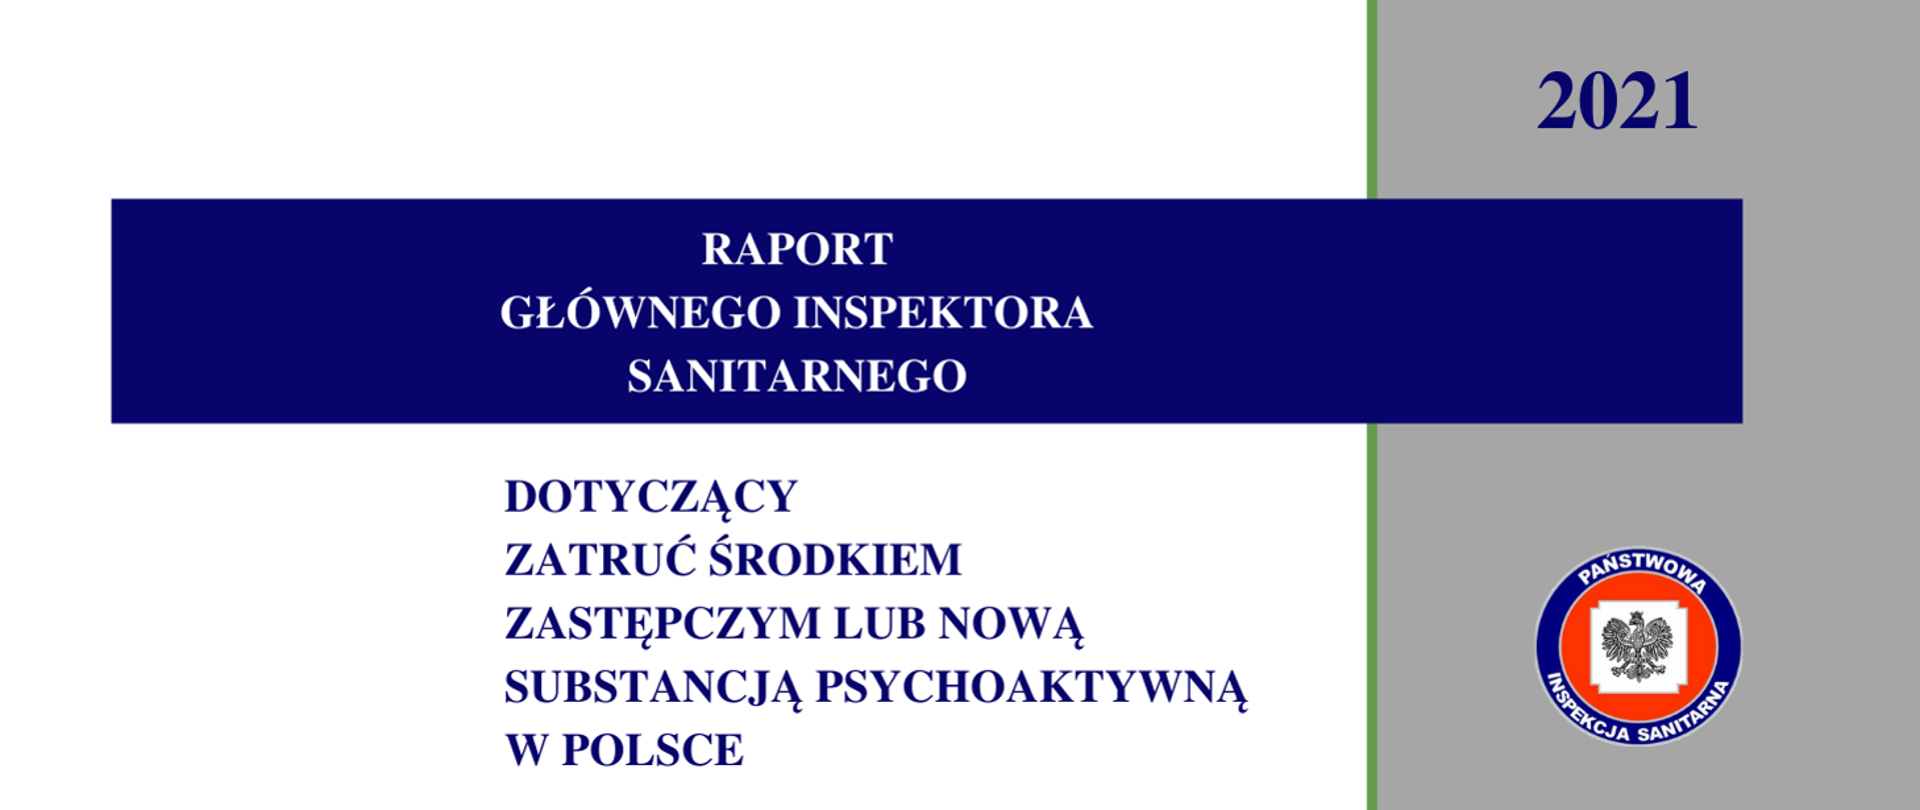 Baner dotyczący zatruć środkami zastępczymi lub nową substancją psychoaktywna w Polsce